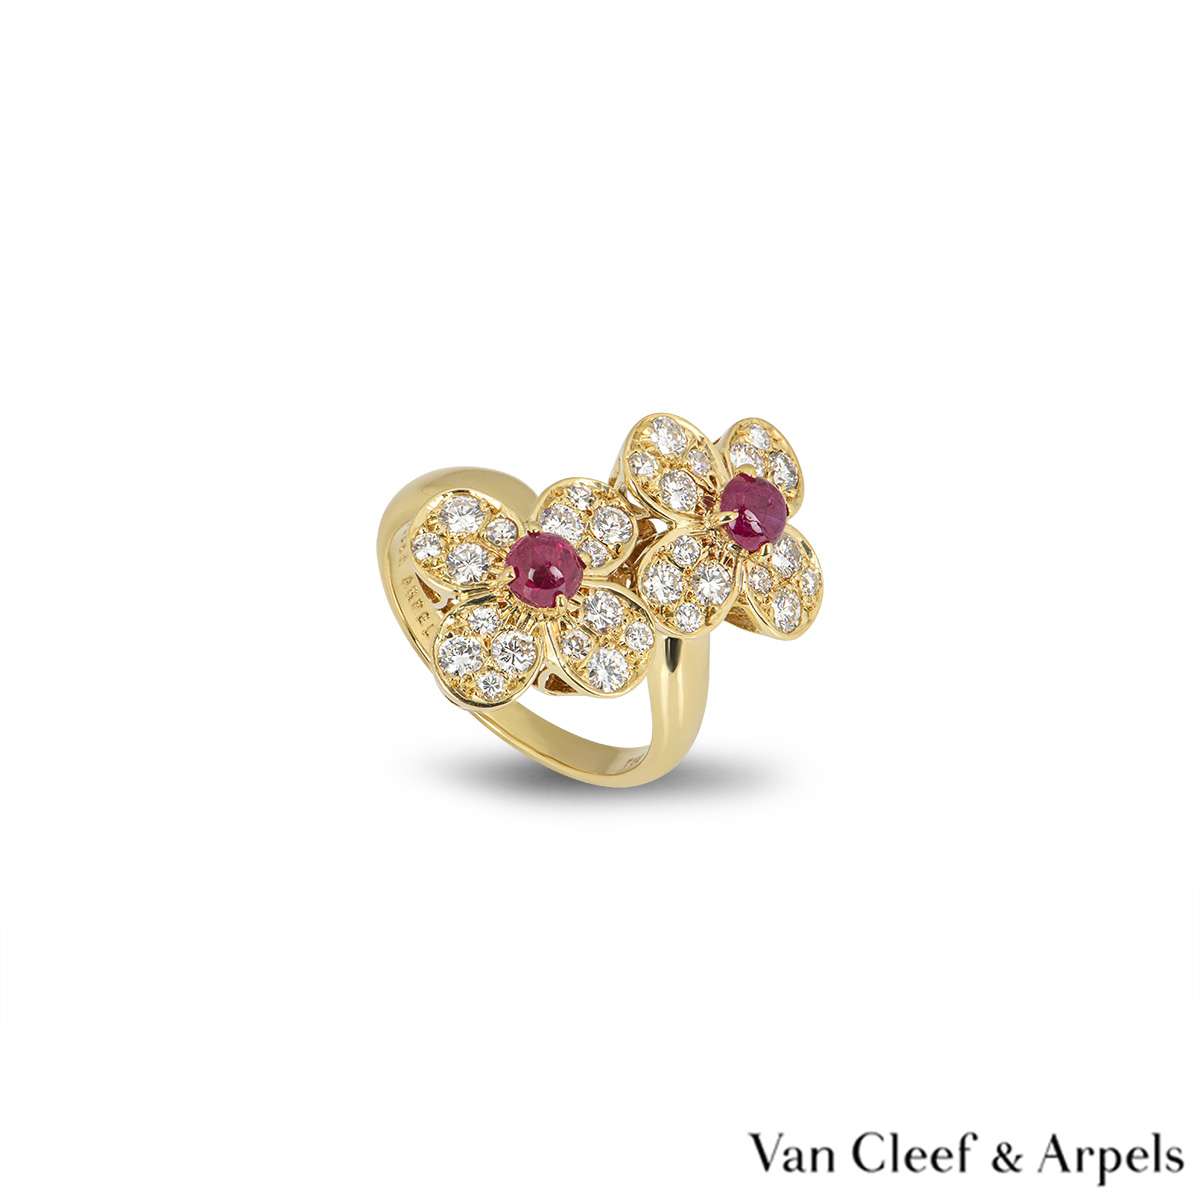 Van Cleef & Arpels Ruby Trefle Ring